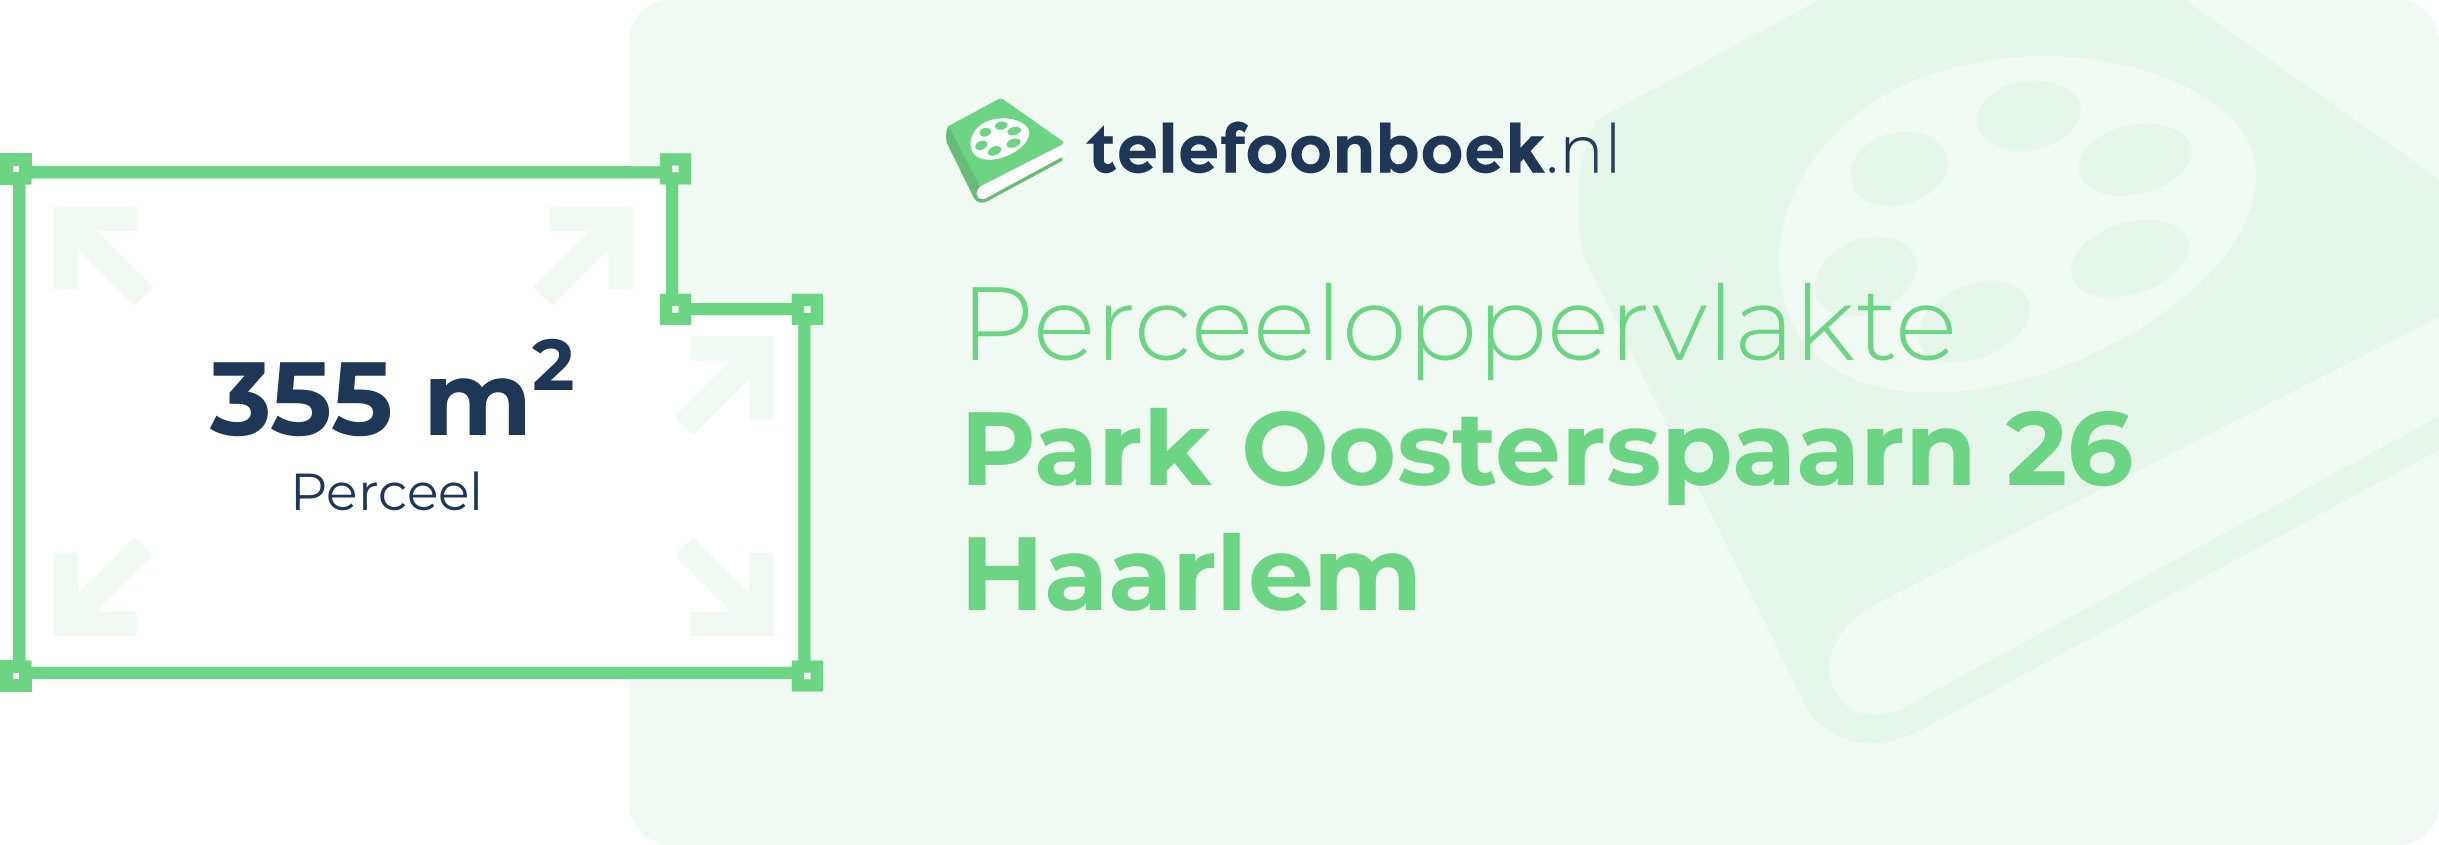 Perceeloppervlakte Park Oosterspaarn 26 Haarlem